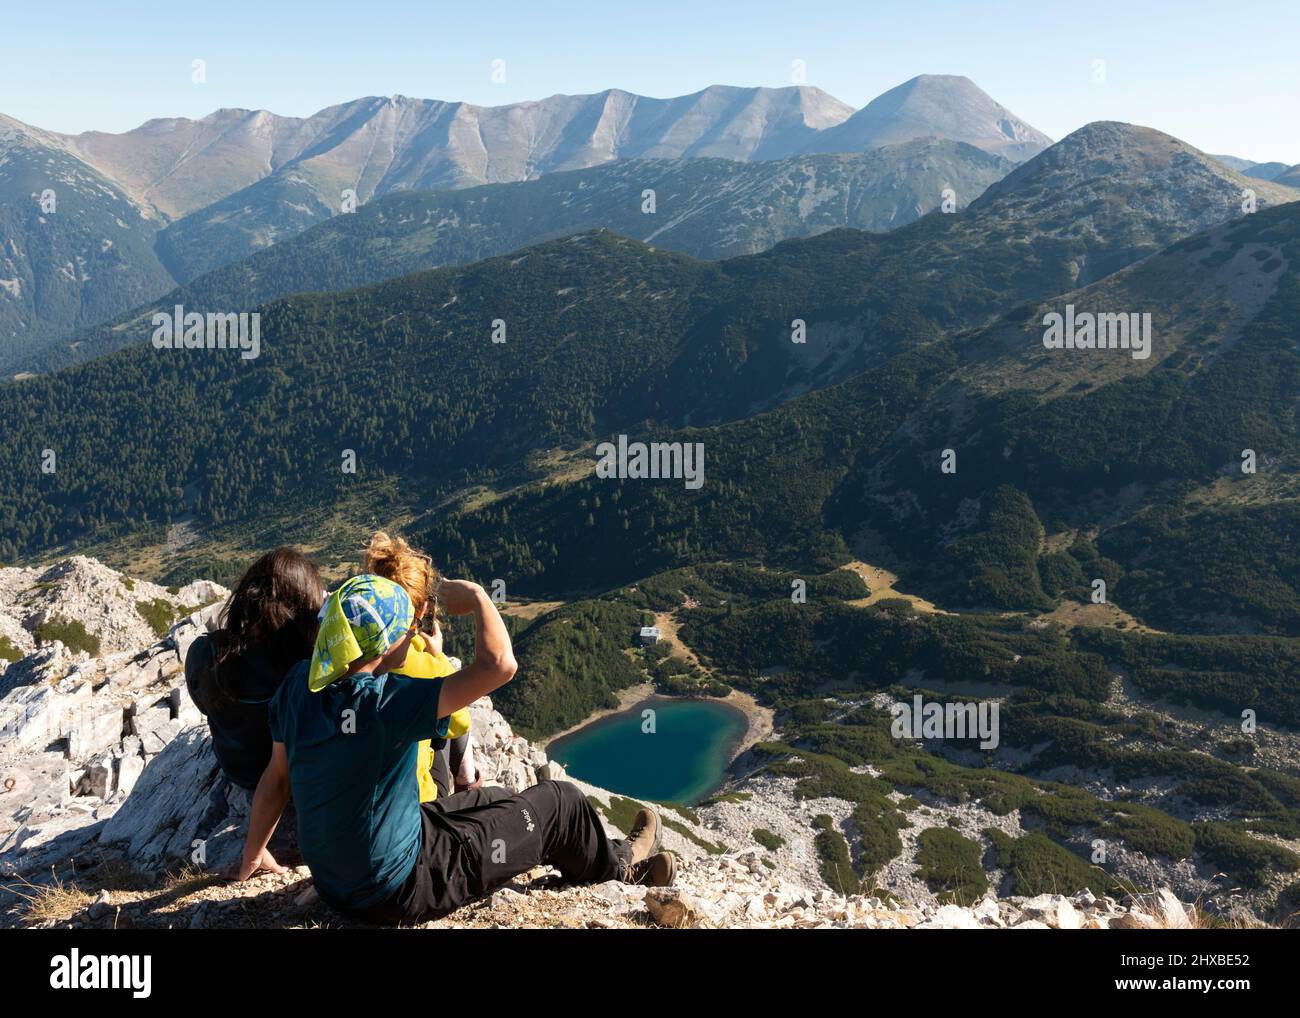 Escursionisti sul picco Sinanitsa a 2516m che si affaccia sul lago glaciale di Sinanitsa e il crinale di montagna Vihren a Pirin montagna, Bulgaria, Europa orientale, Balcani Foto Stock